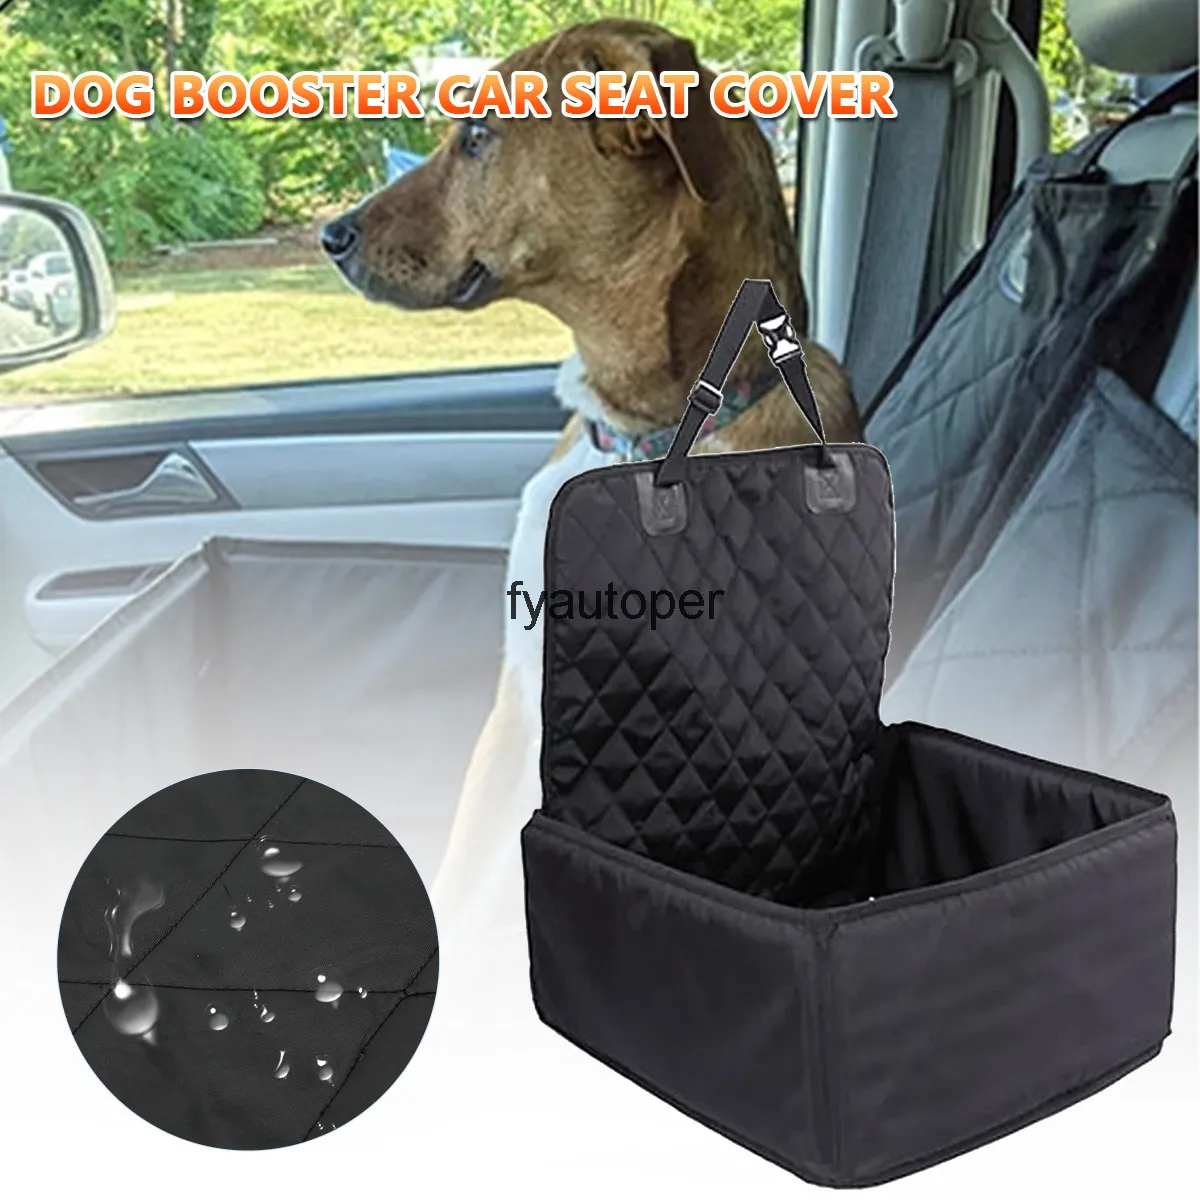 Hond Auto Seat Cover 2 in 1 Waterdichte Puppy Mand Anti-Silp Pet Rier Cat Booster Outdoor Reizen